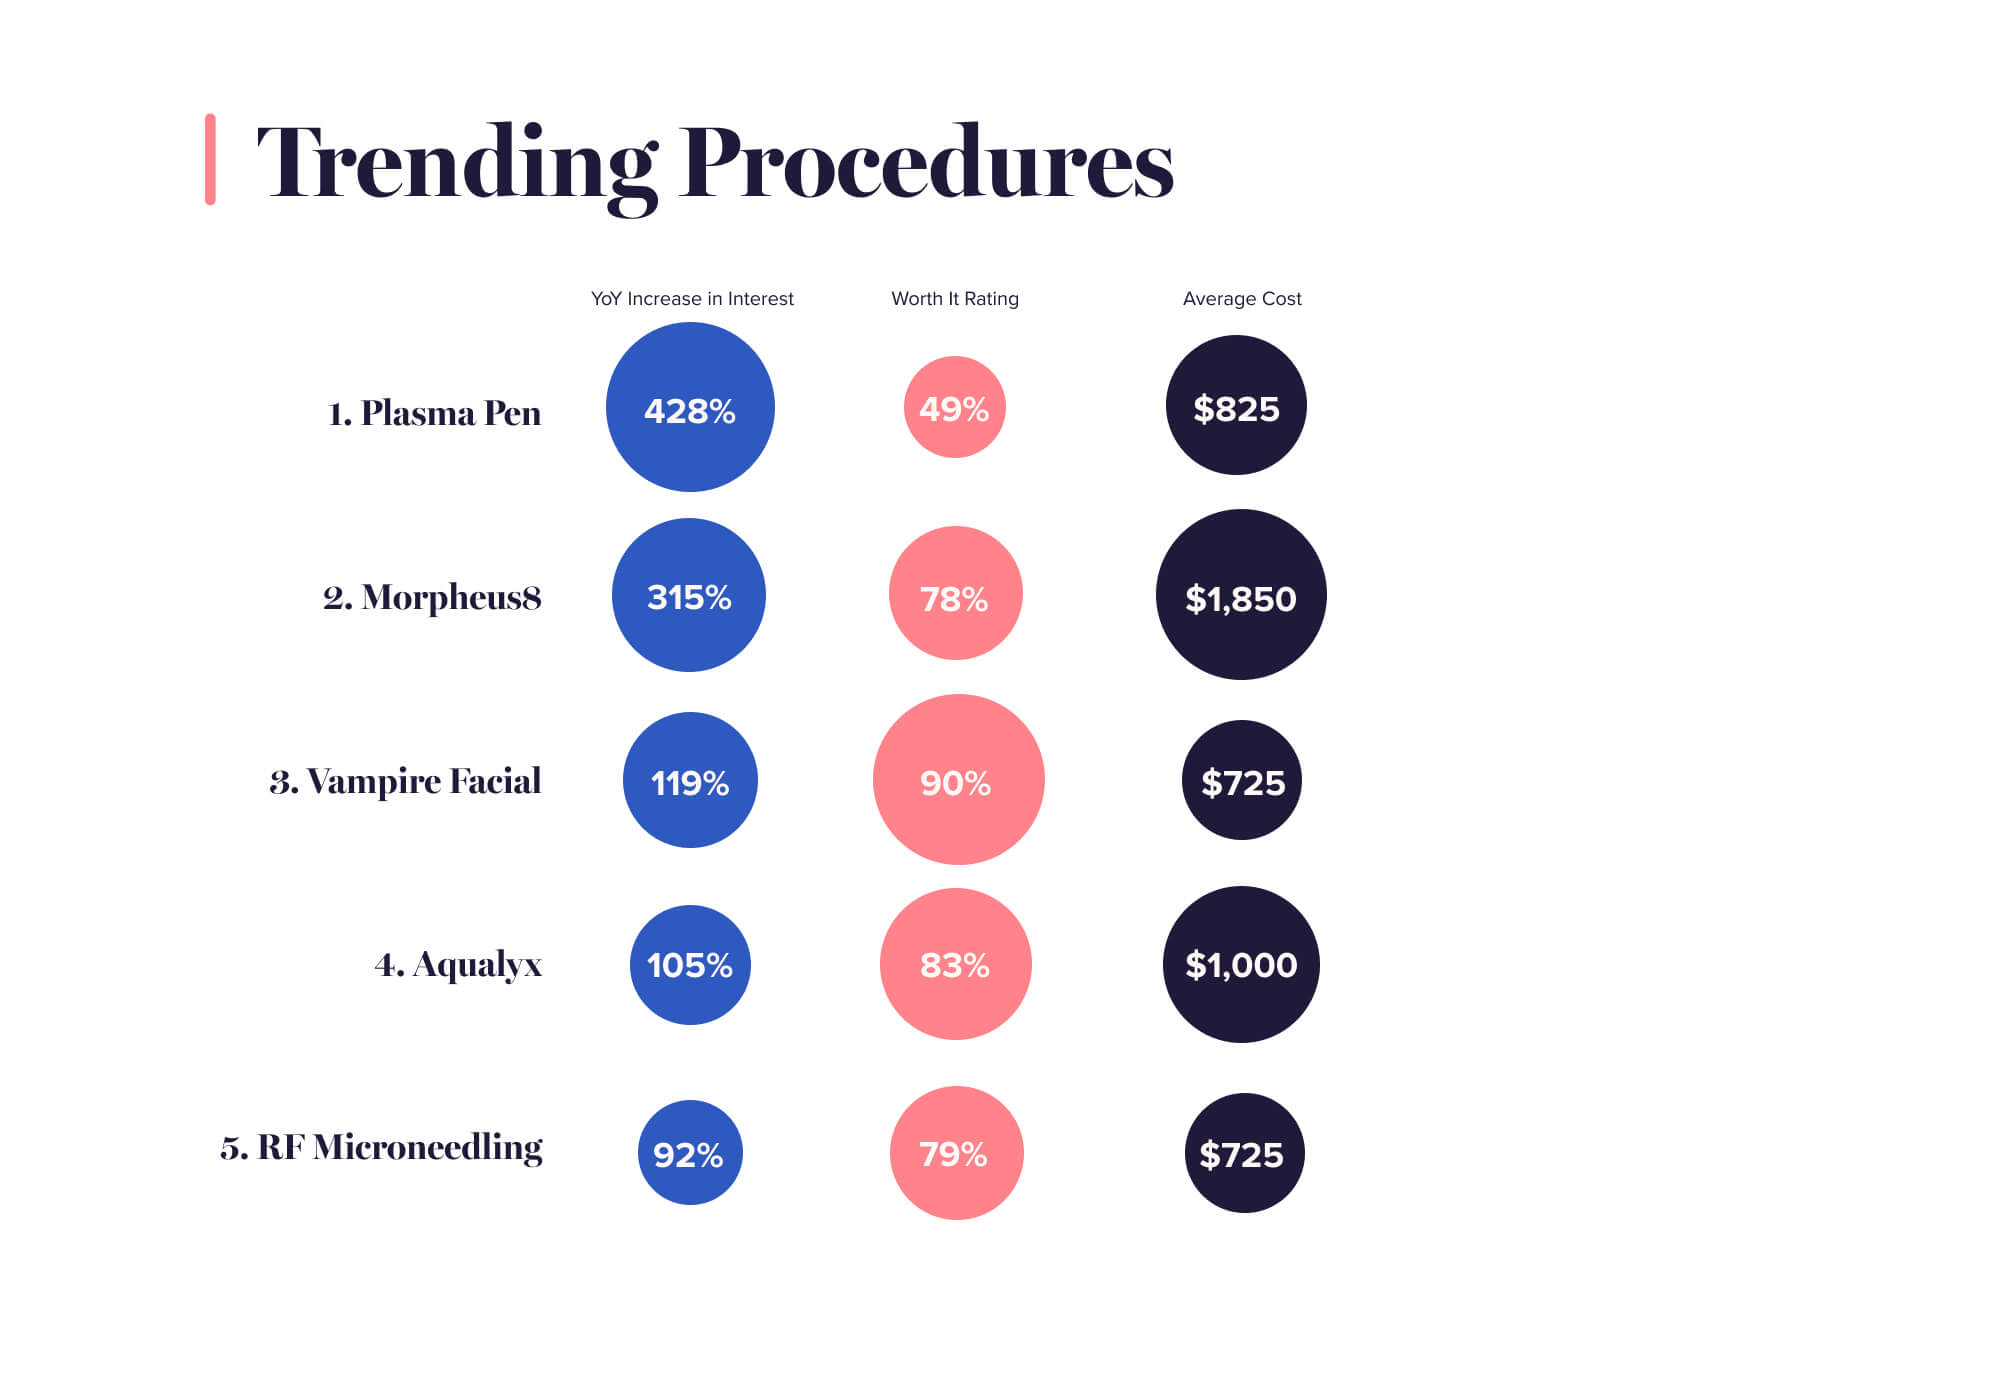 The top 5 trending cosmetic procedures